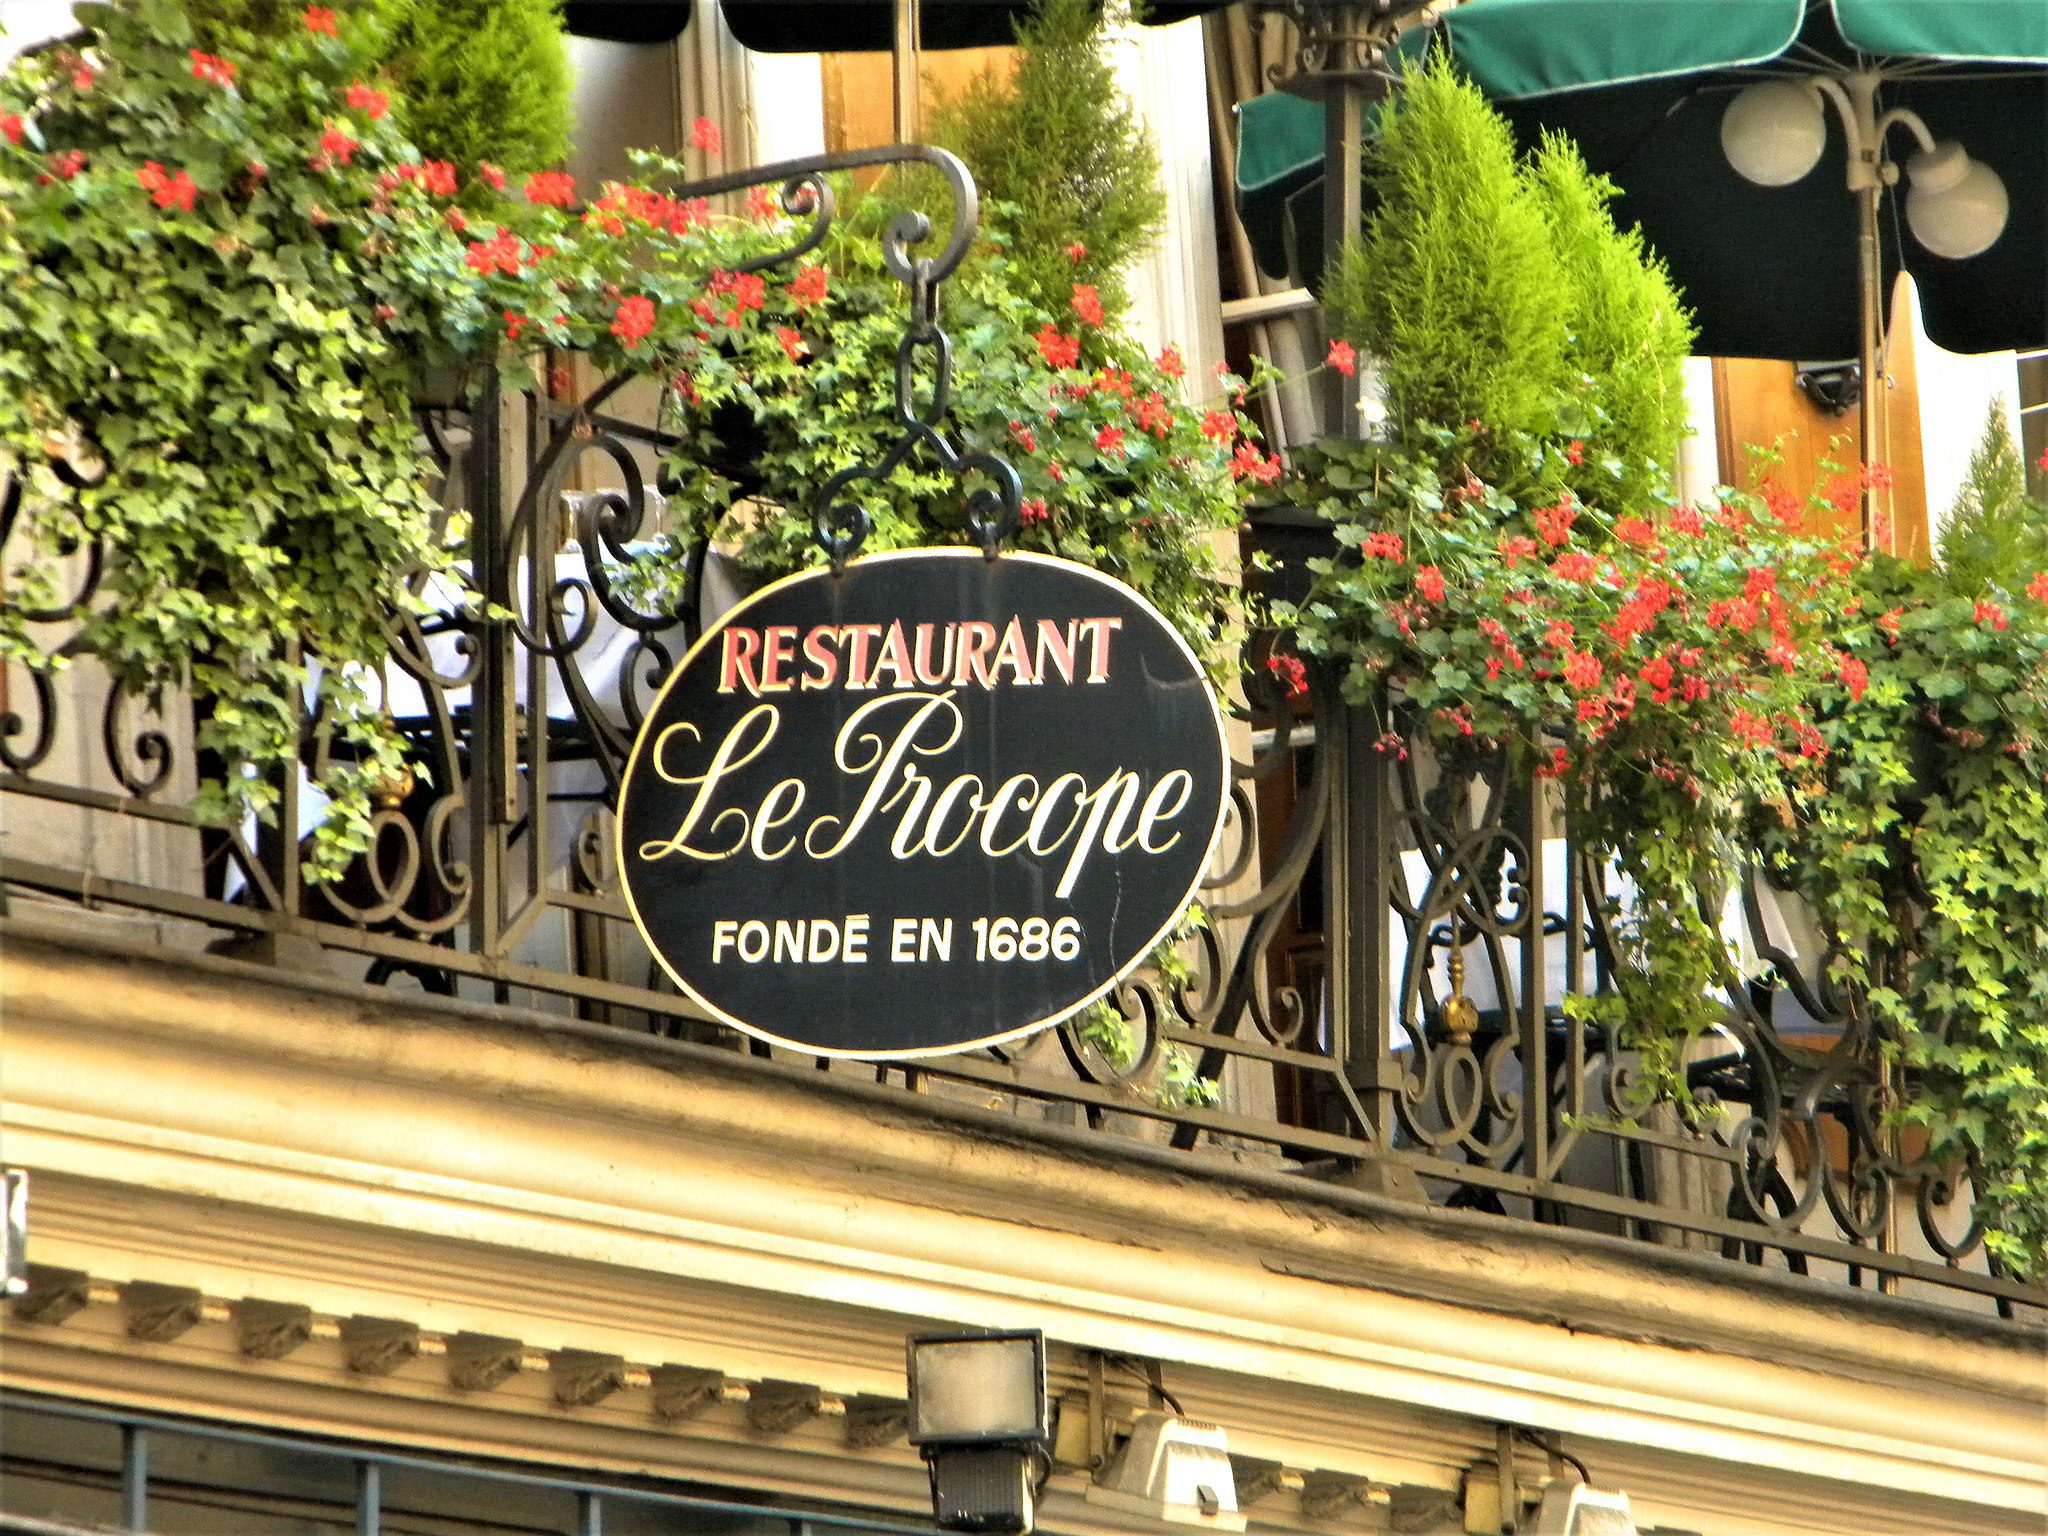 RESTAURANT SÖZCÜĞÜNÜN KAYNAĞI..! - Paris France Restaurant restoran